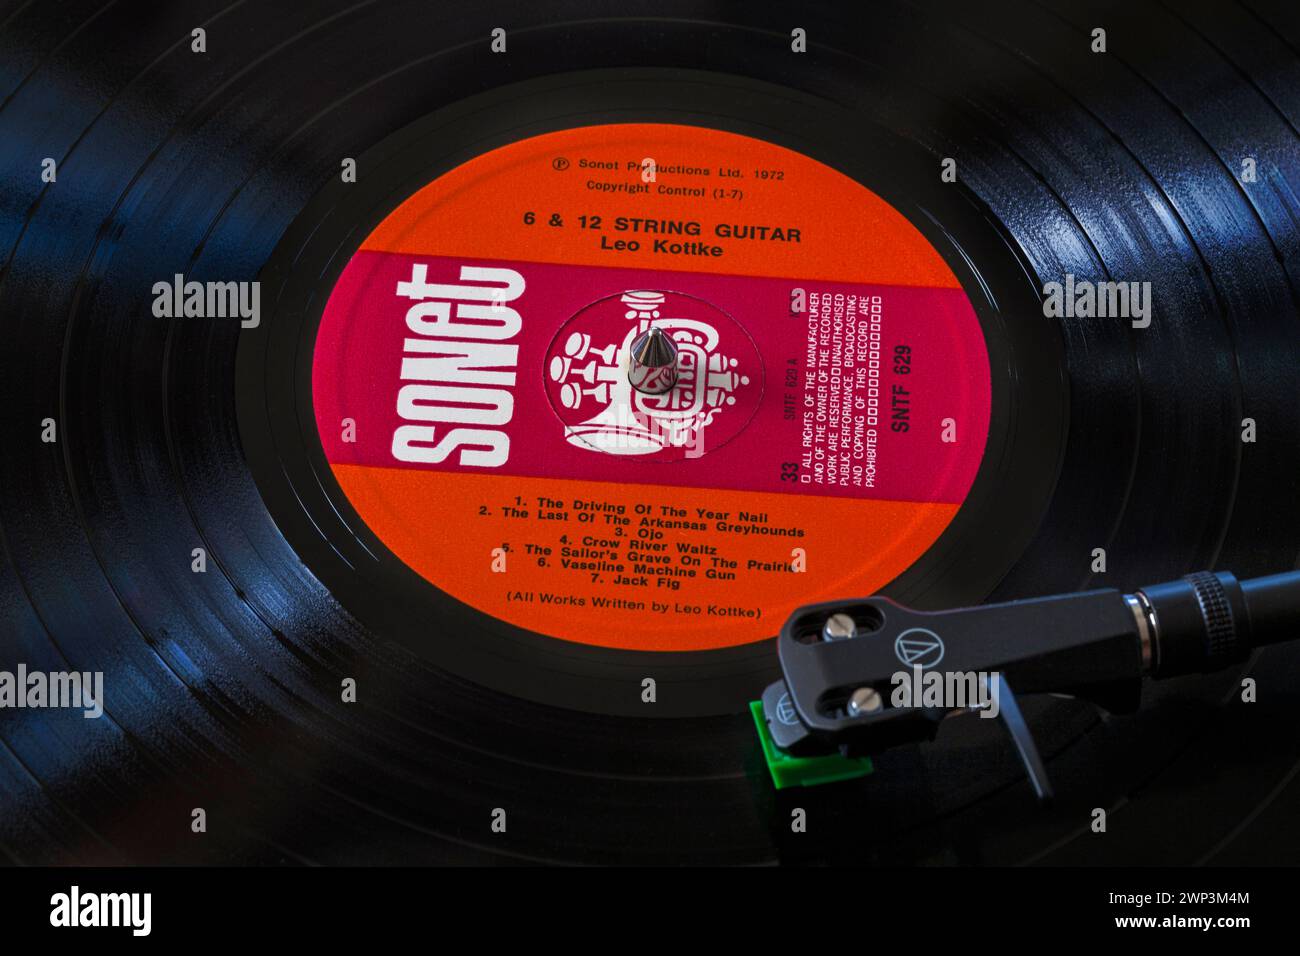 Leo Kottke Vinyl-Album-LP mit 6 & 12 String Gitarre mit Tonarm, Kartusche, Kopfschale und Stift auf Plattenspieler - 1972 Stockfoto